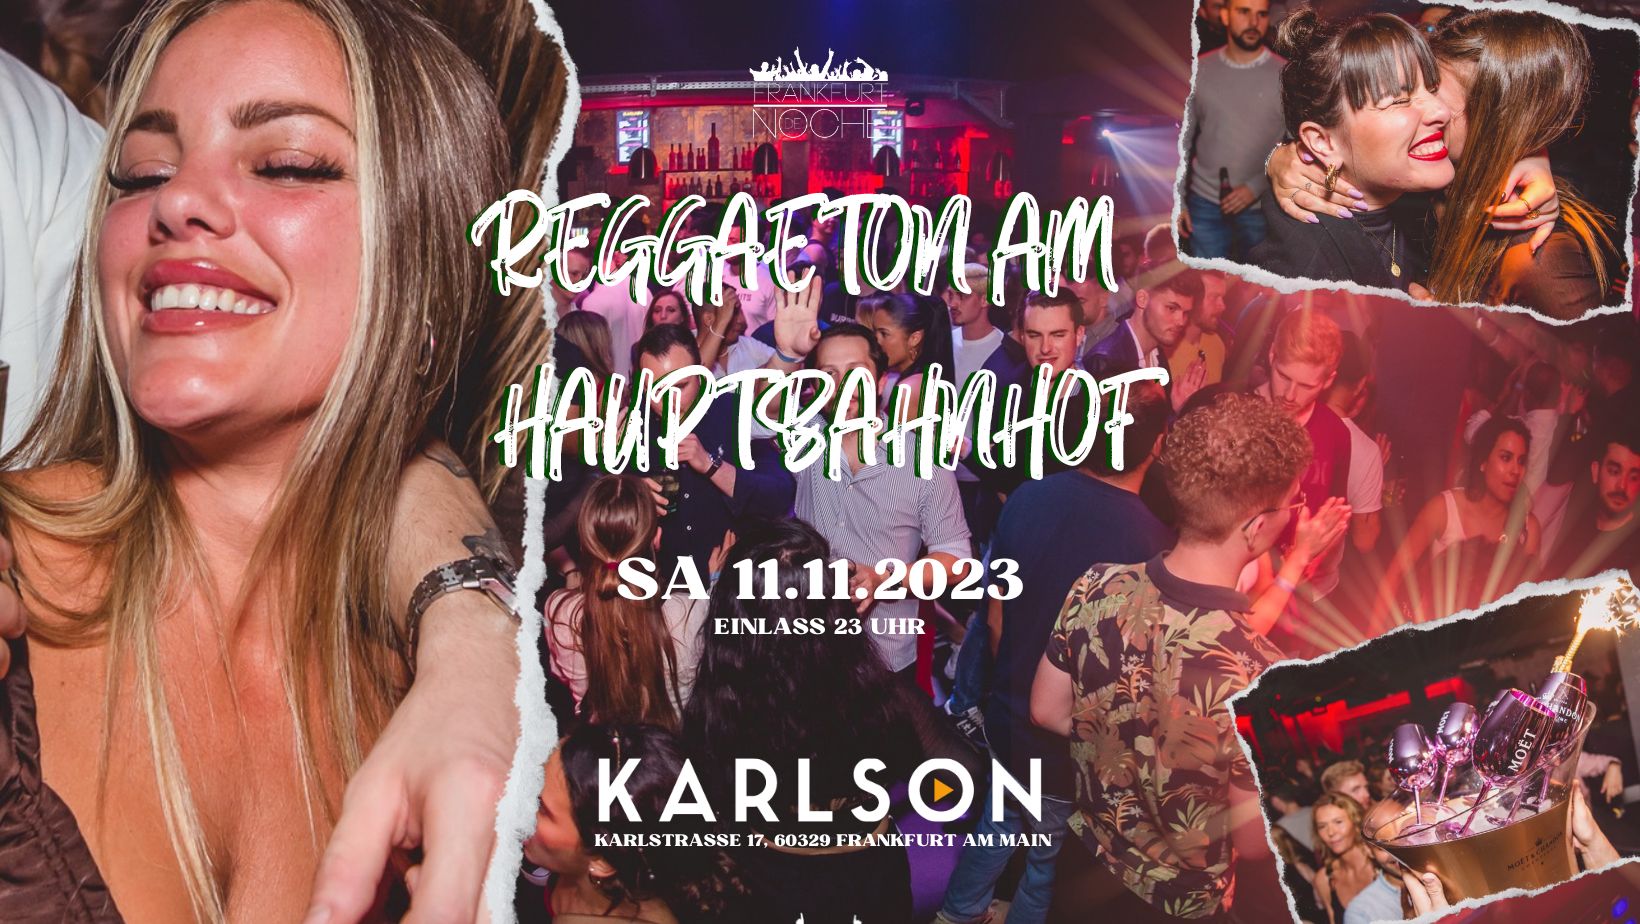 Reggaeton am Hauptbahnhof 11.11.2023 Karlson, Frankfurt